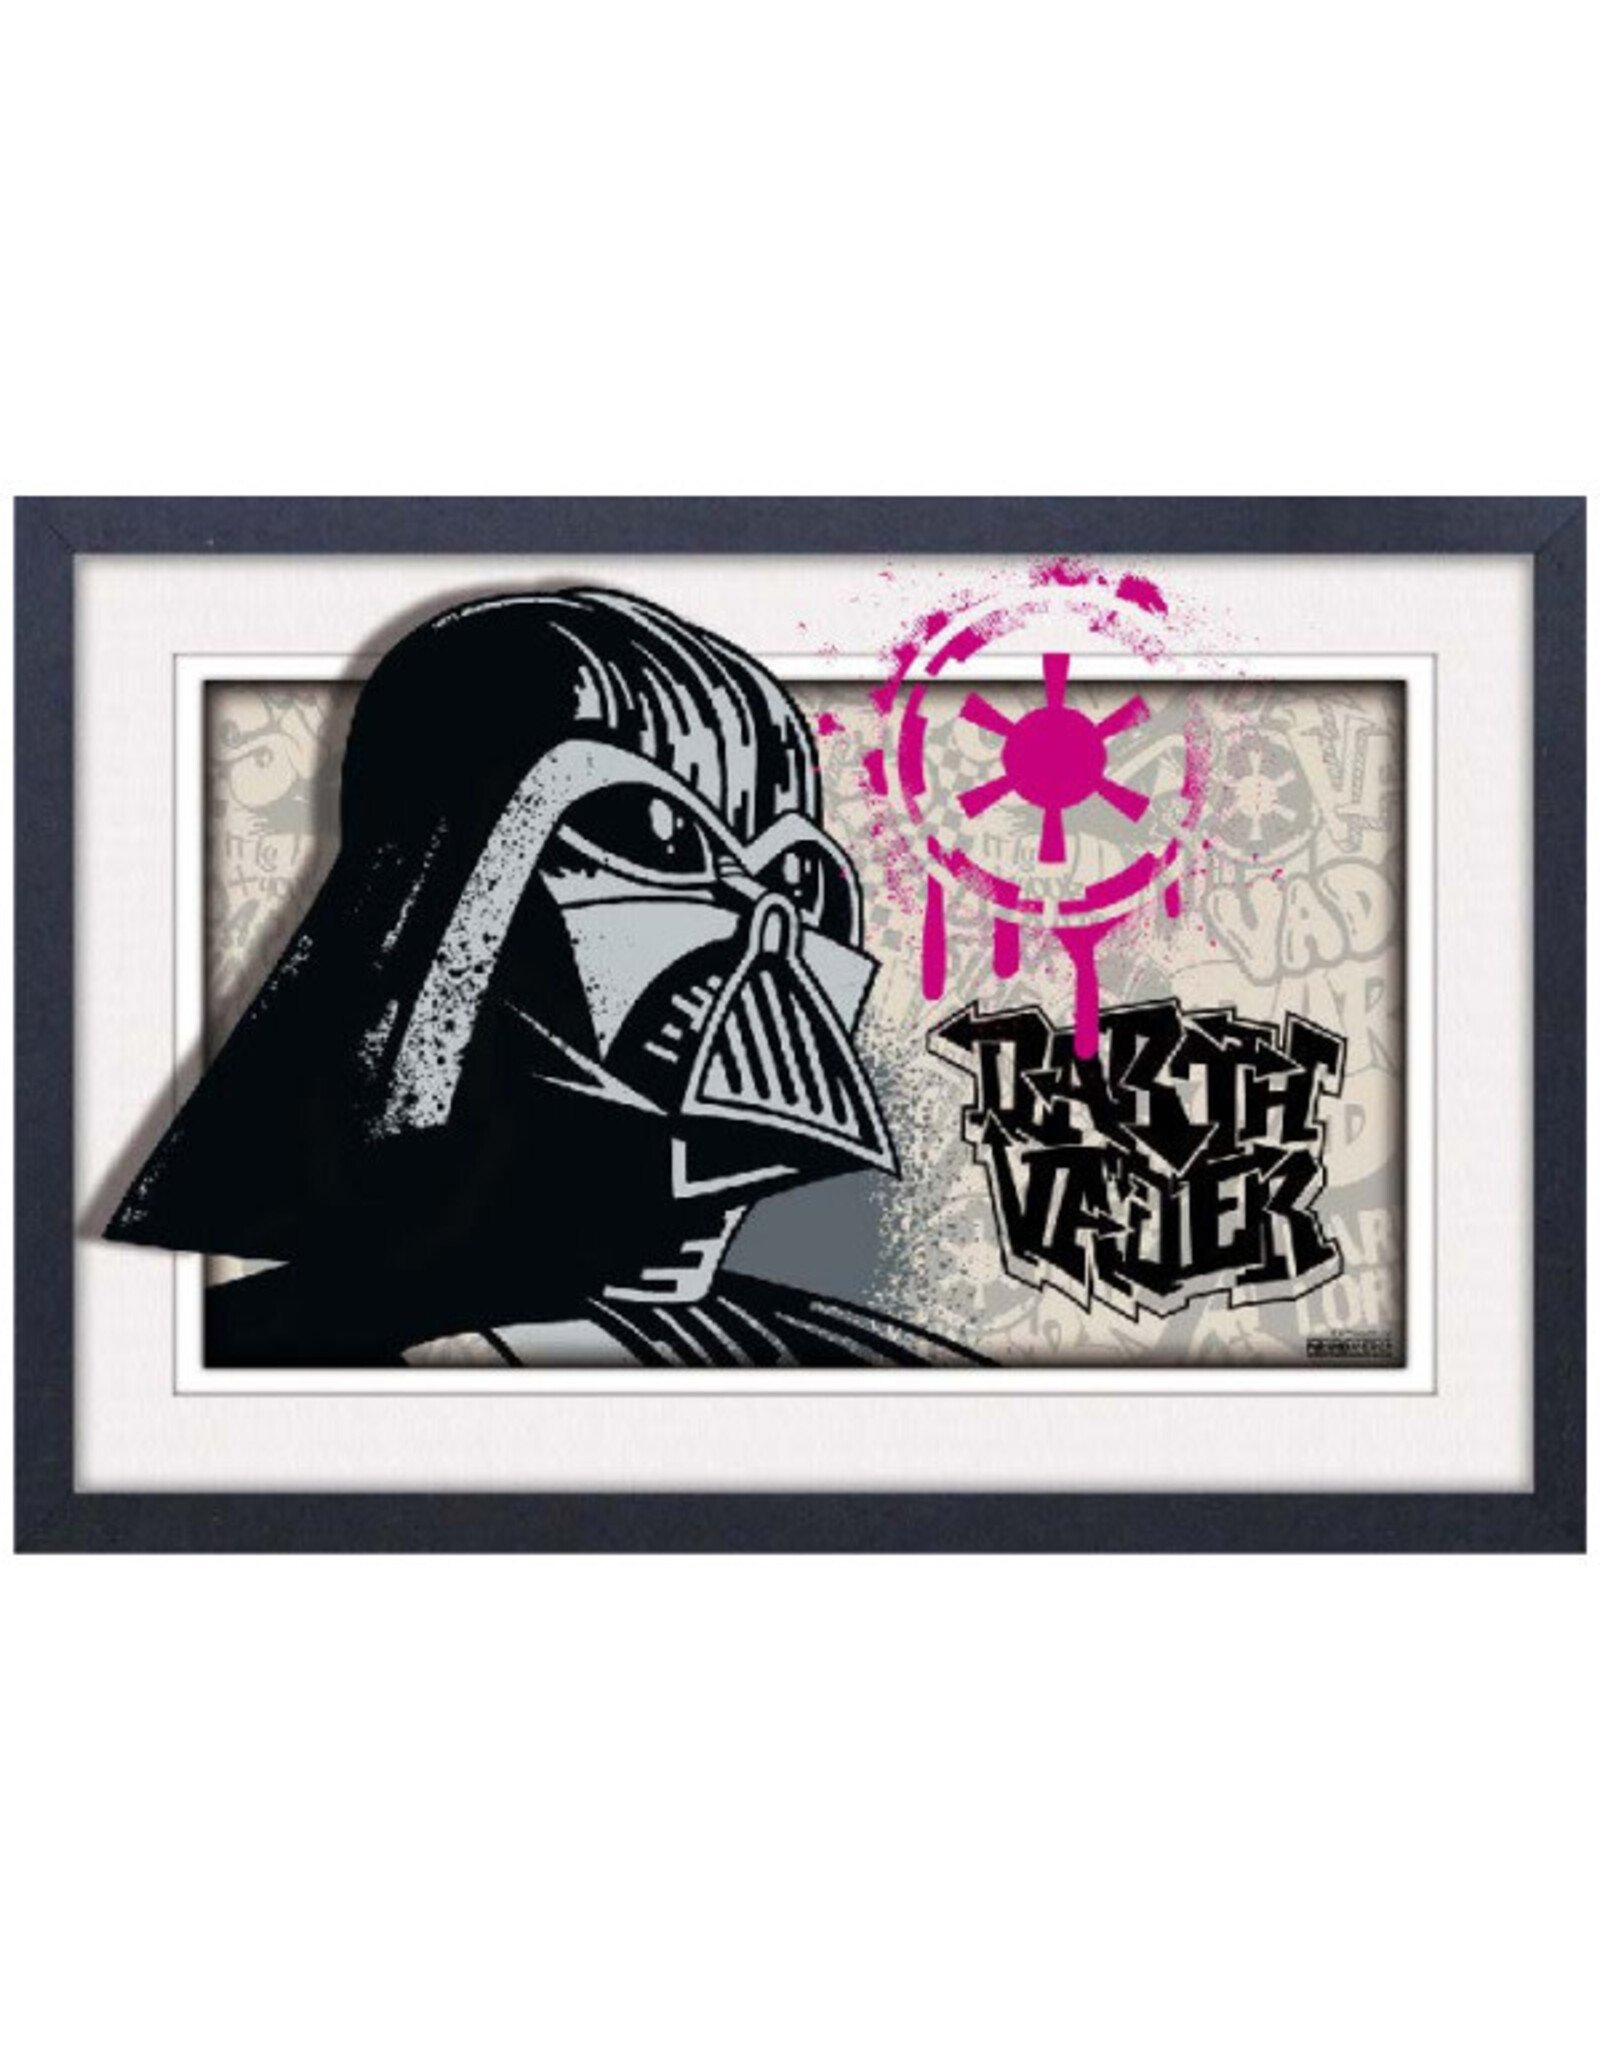 Pyramid America Star Wars - Vadar Graffiti  11" x 17" Faux Matte Print